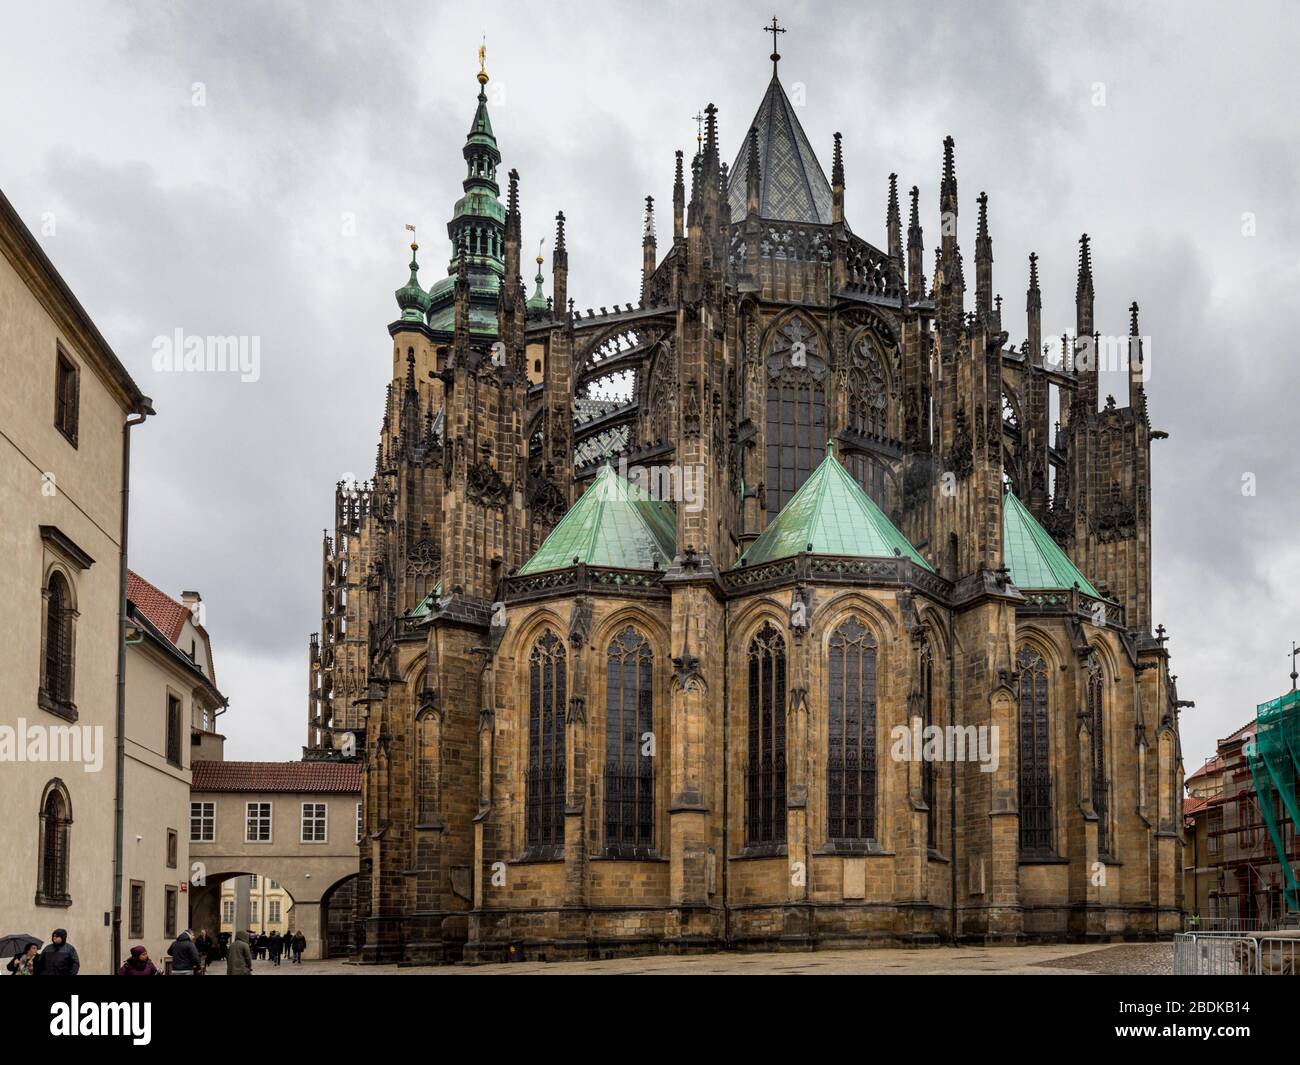 Catedral de San Vito. Esta catedral gótica se encuentra en el centro del castillo de Praga, con vistas a la ciudad. Foto de stock